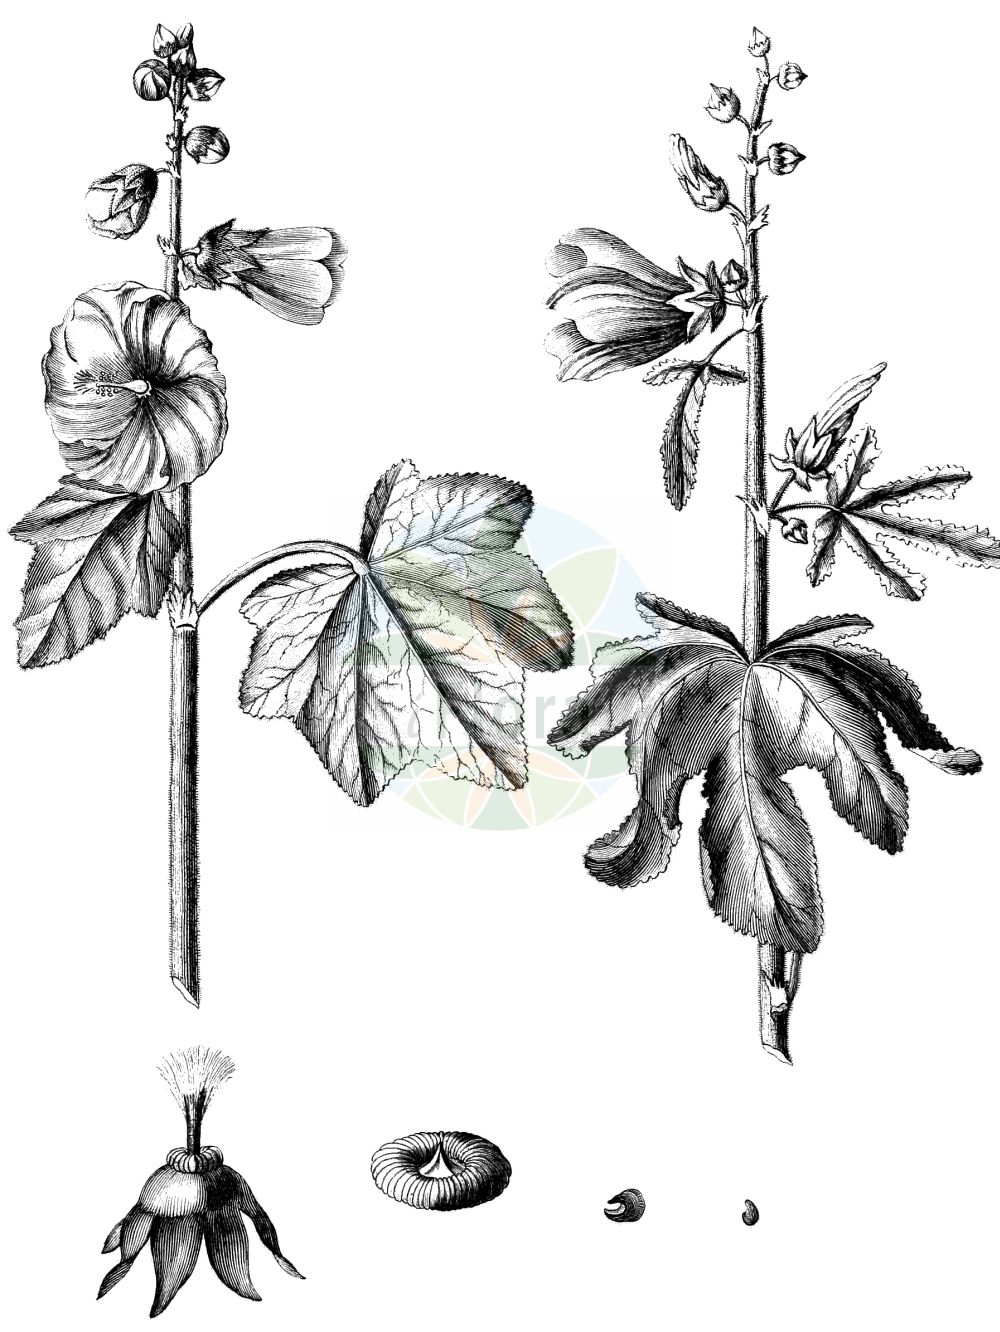 Historische Abbildung von Alcea rosea (Gewöhnliche Stockrose - common hollyhock). Das Bild zeigt Blatt, Bluete, Frucht und Same. ---- Historical Drawing of Alcea rosea (Gewöhnliche Stockrose - common hollyhock). The image is showing leaf, flower, fruit and seed.(Alcea rosea,Gewöhnliche Stockrose,common hollyhock,Alcea ficifolia,Alcea rosea,Althaea ficifolia,Althaea rosea,Gewoehnliche Stockrose,common hollyhock,Alcea,Malvaceae,Malvengewächse,Mallow family,Blatt,Bluete,Frucht,Same,leaf,flower,fruit,seed)